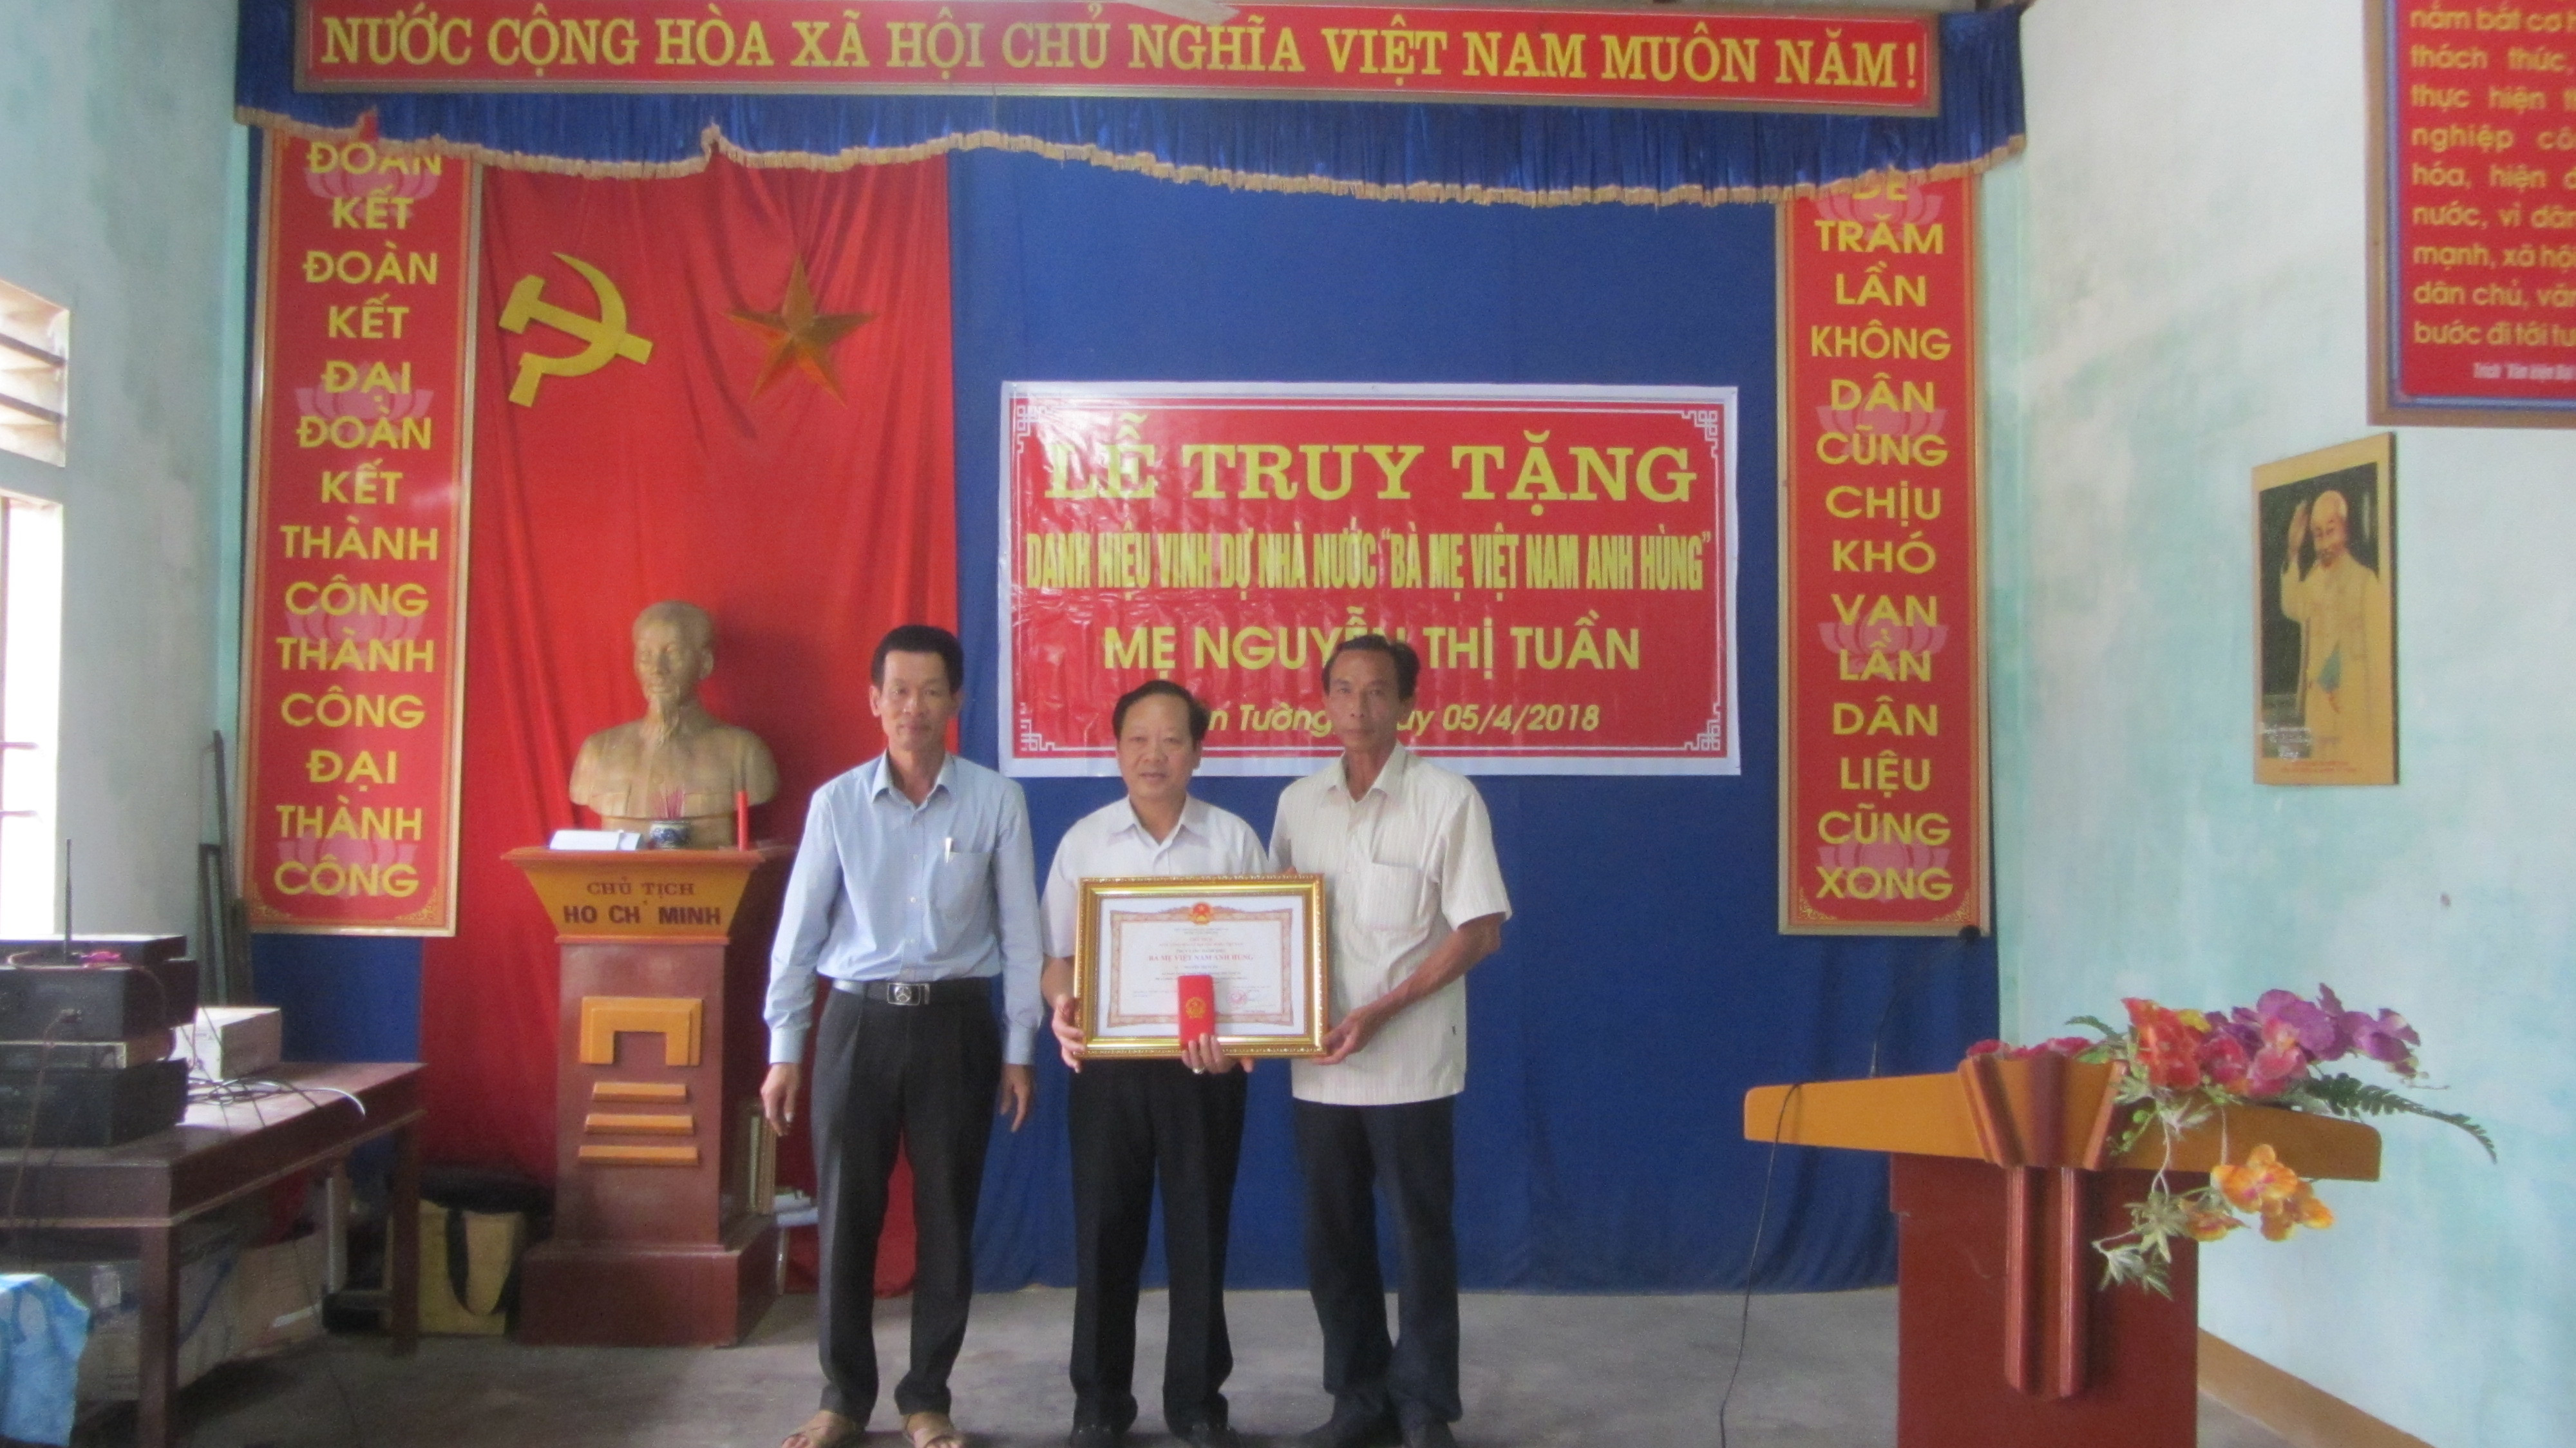 Lễ truy tặng danh hiệu Bà mẹ VNAH cho mẹ Nguyễn Thị Tuần. Ảnh: Nguyễn Hữu Mai.